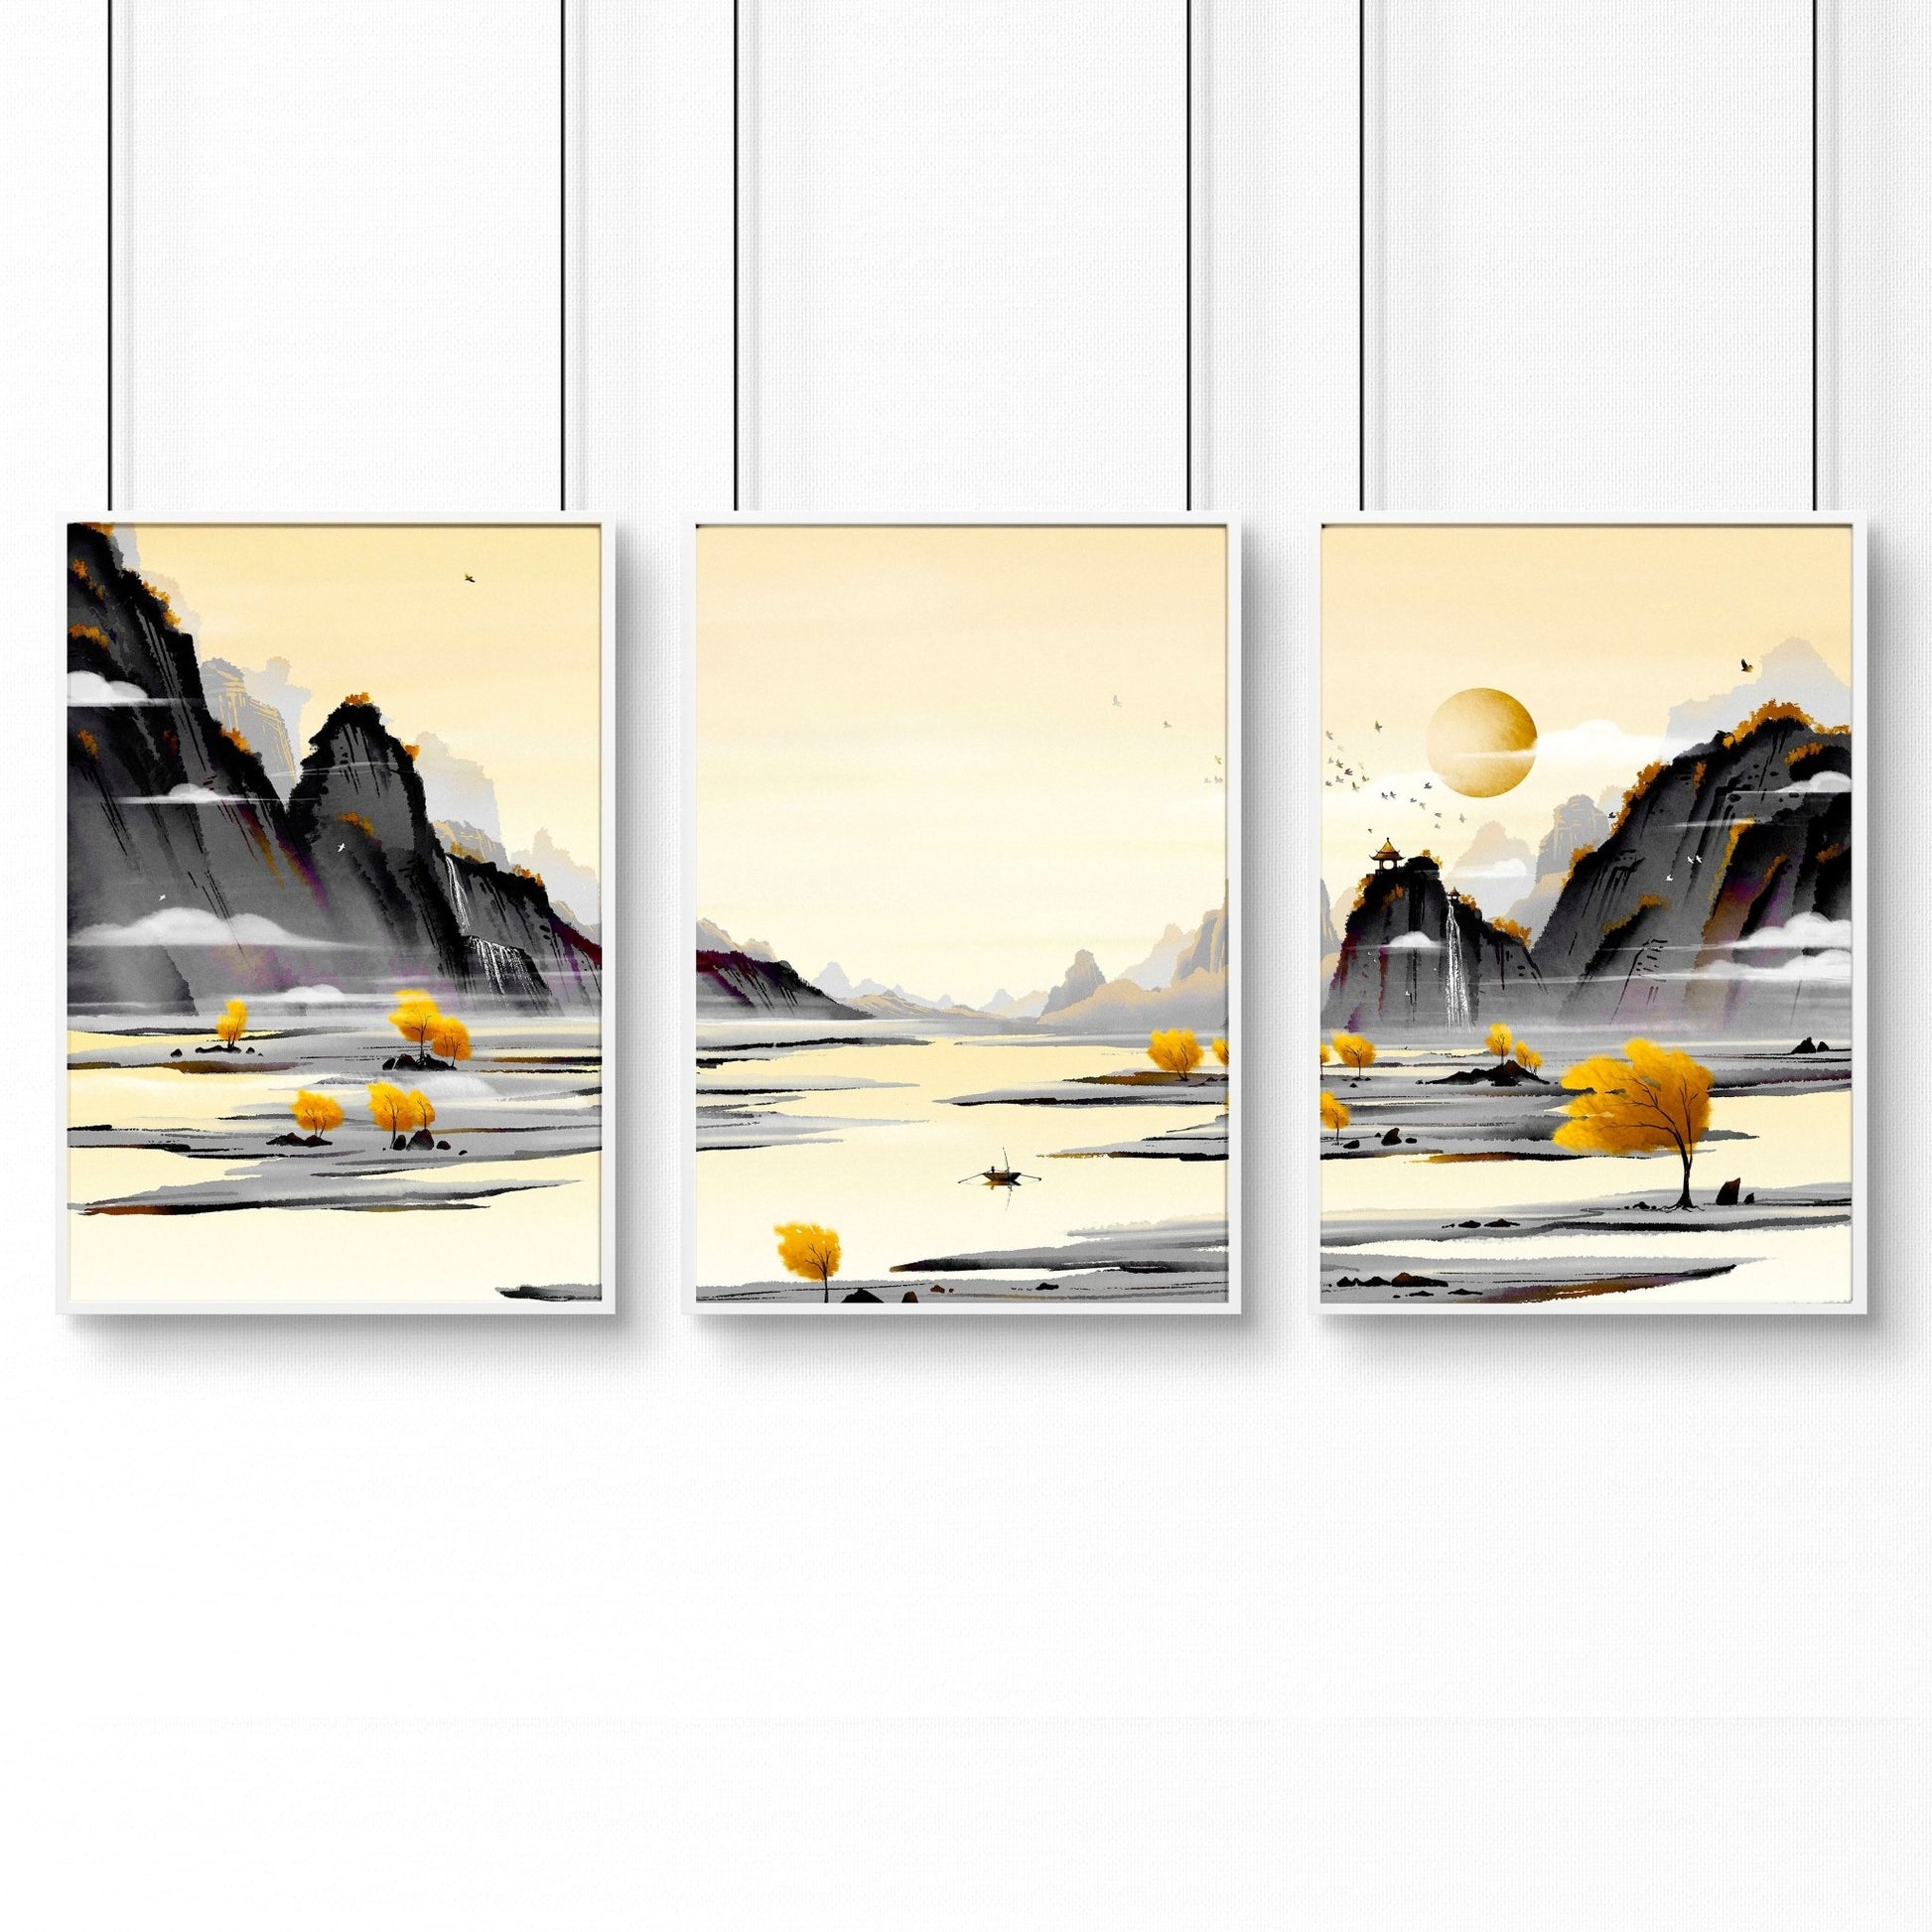 Zen Office decor | set of 3 wall art prints - About Wall Art